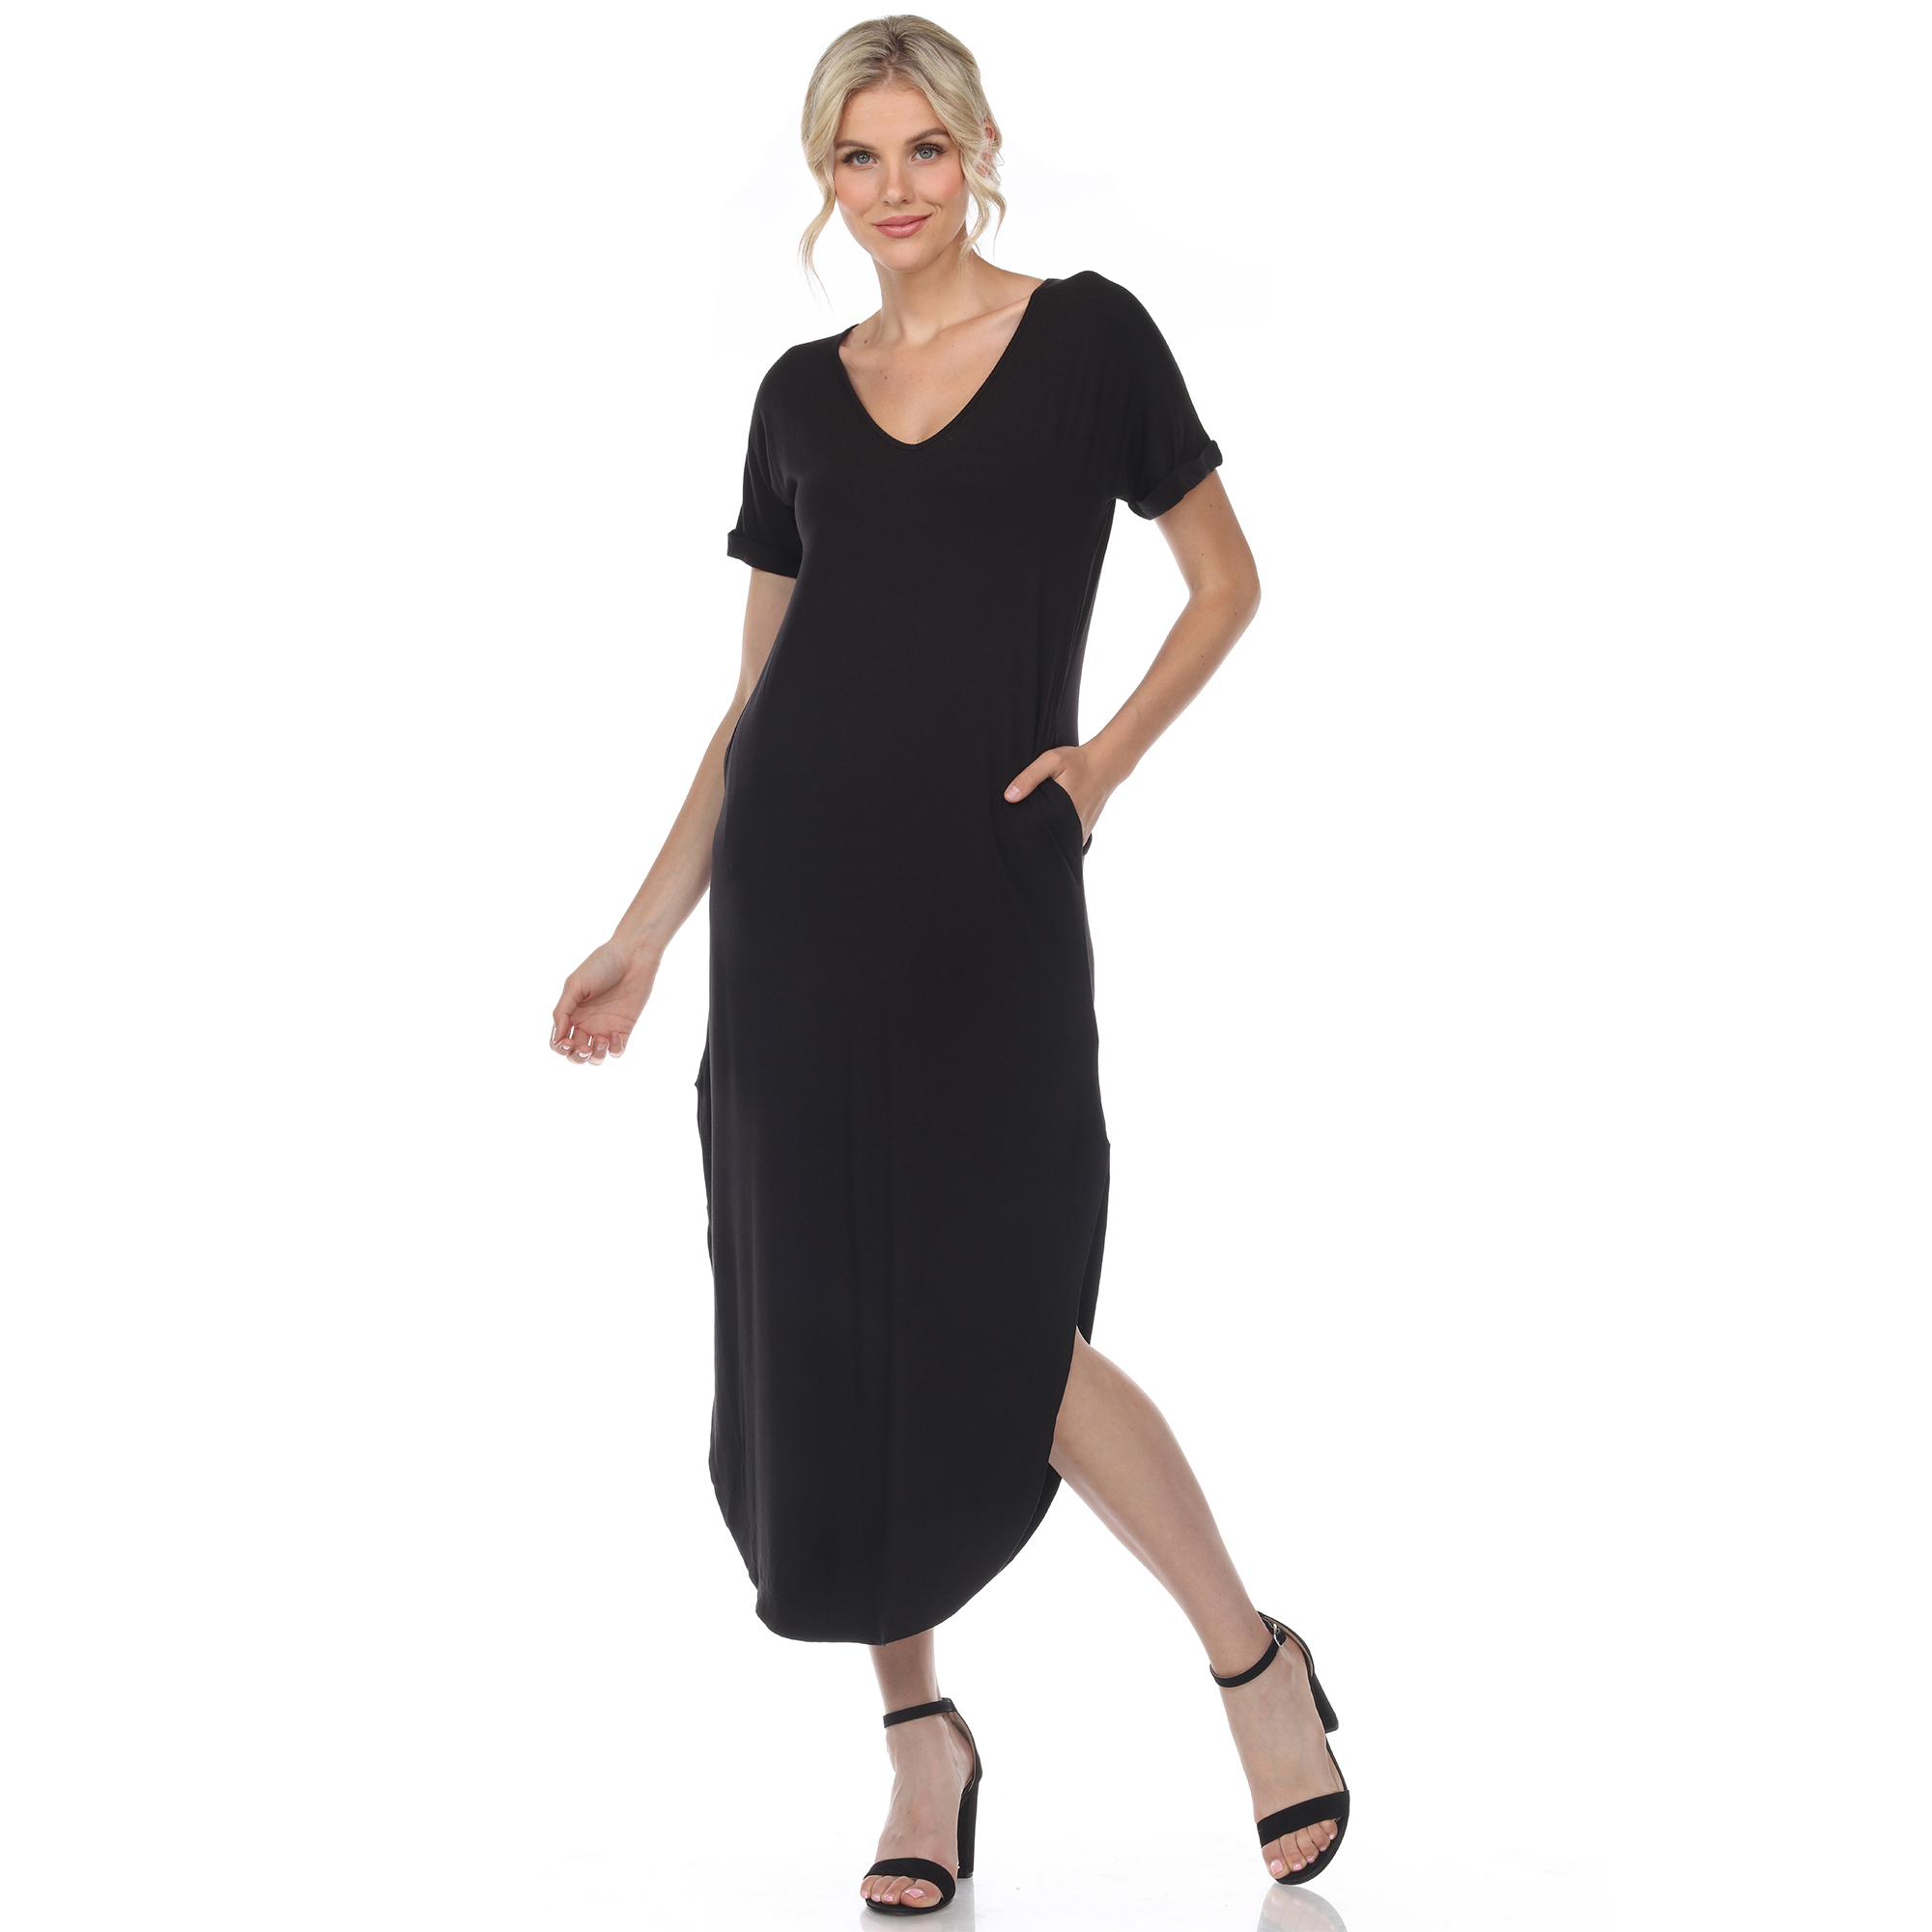 White Mark Women's Short Sleeve V-neck Maxi Dress - Black, Medium